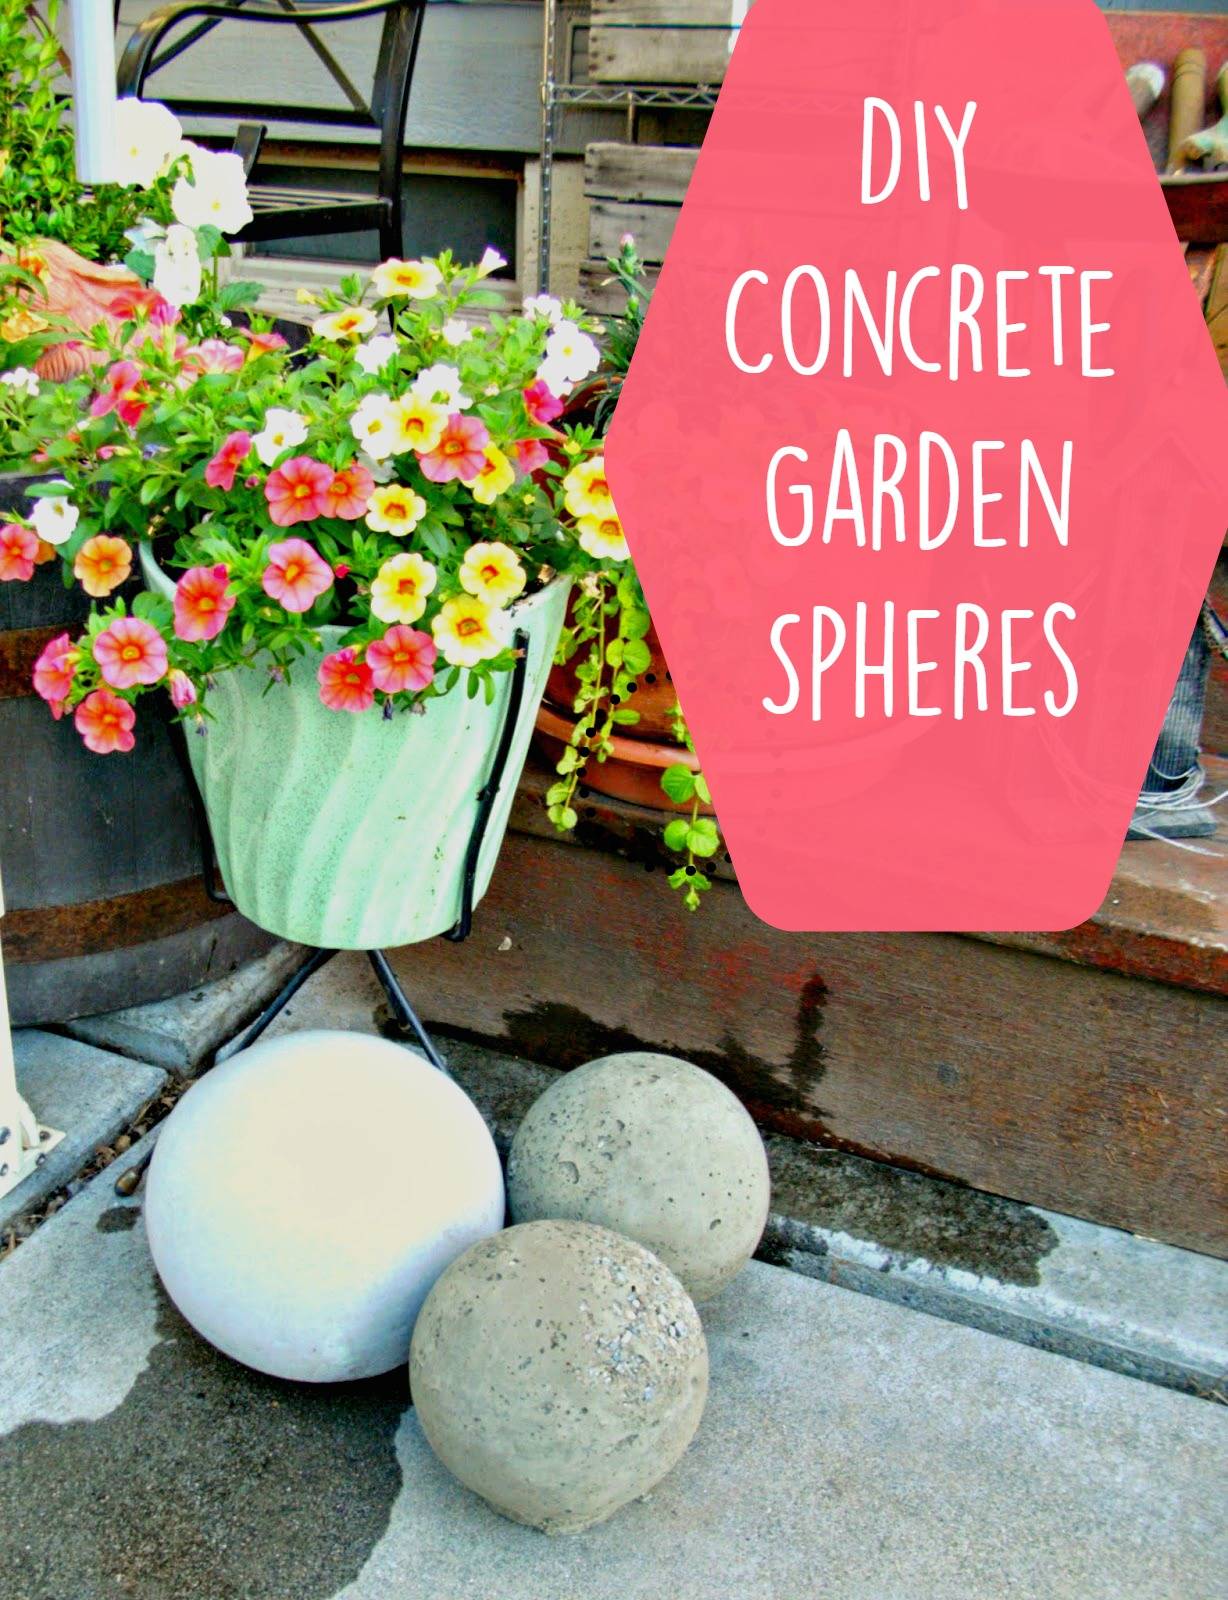 Concrete Spheres Garden